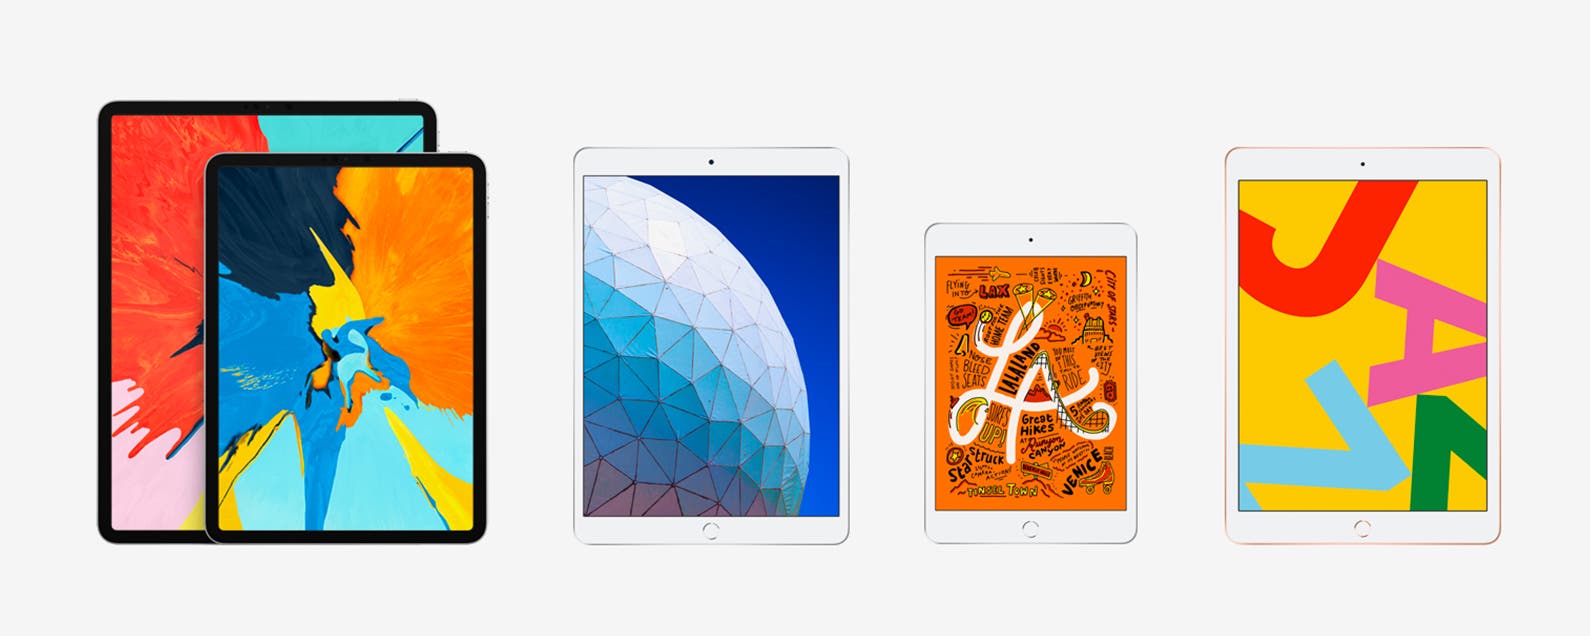 iPad Pro vs iPad mini vs iPad 9.7-inch: Which iPad is Right for You?